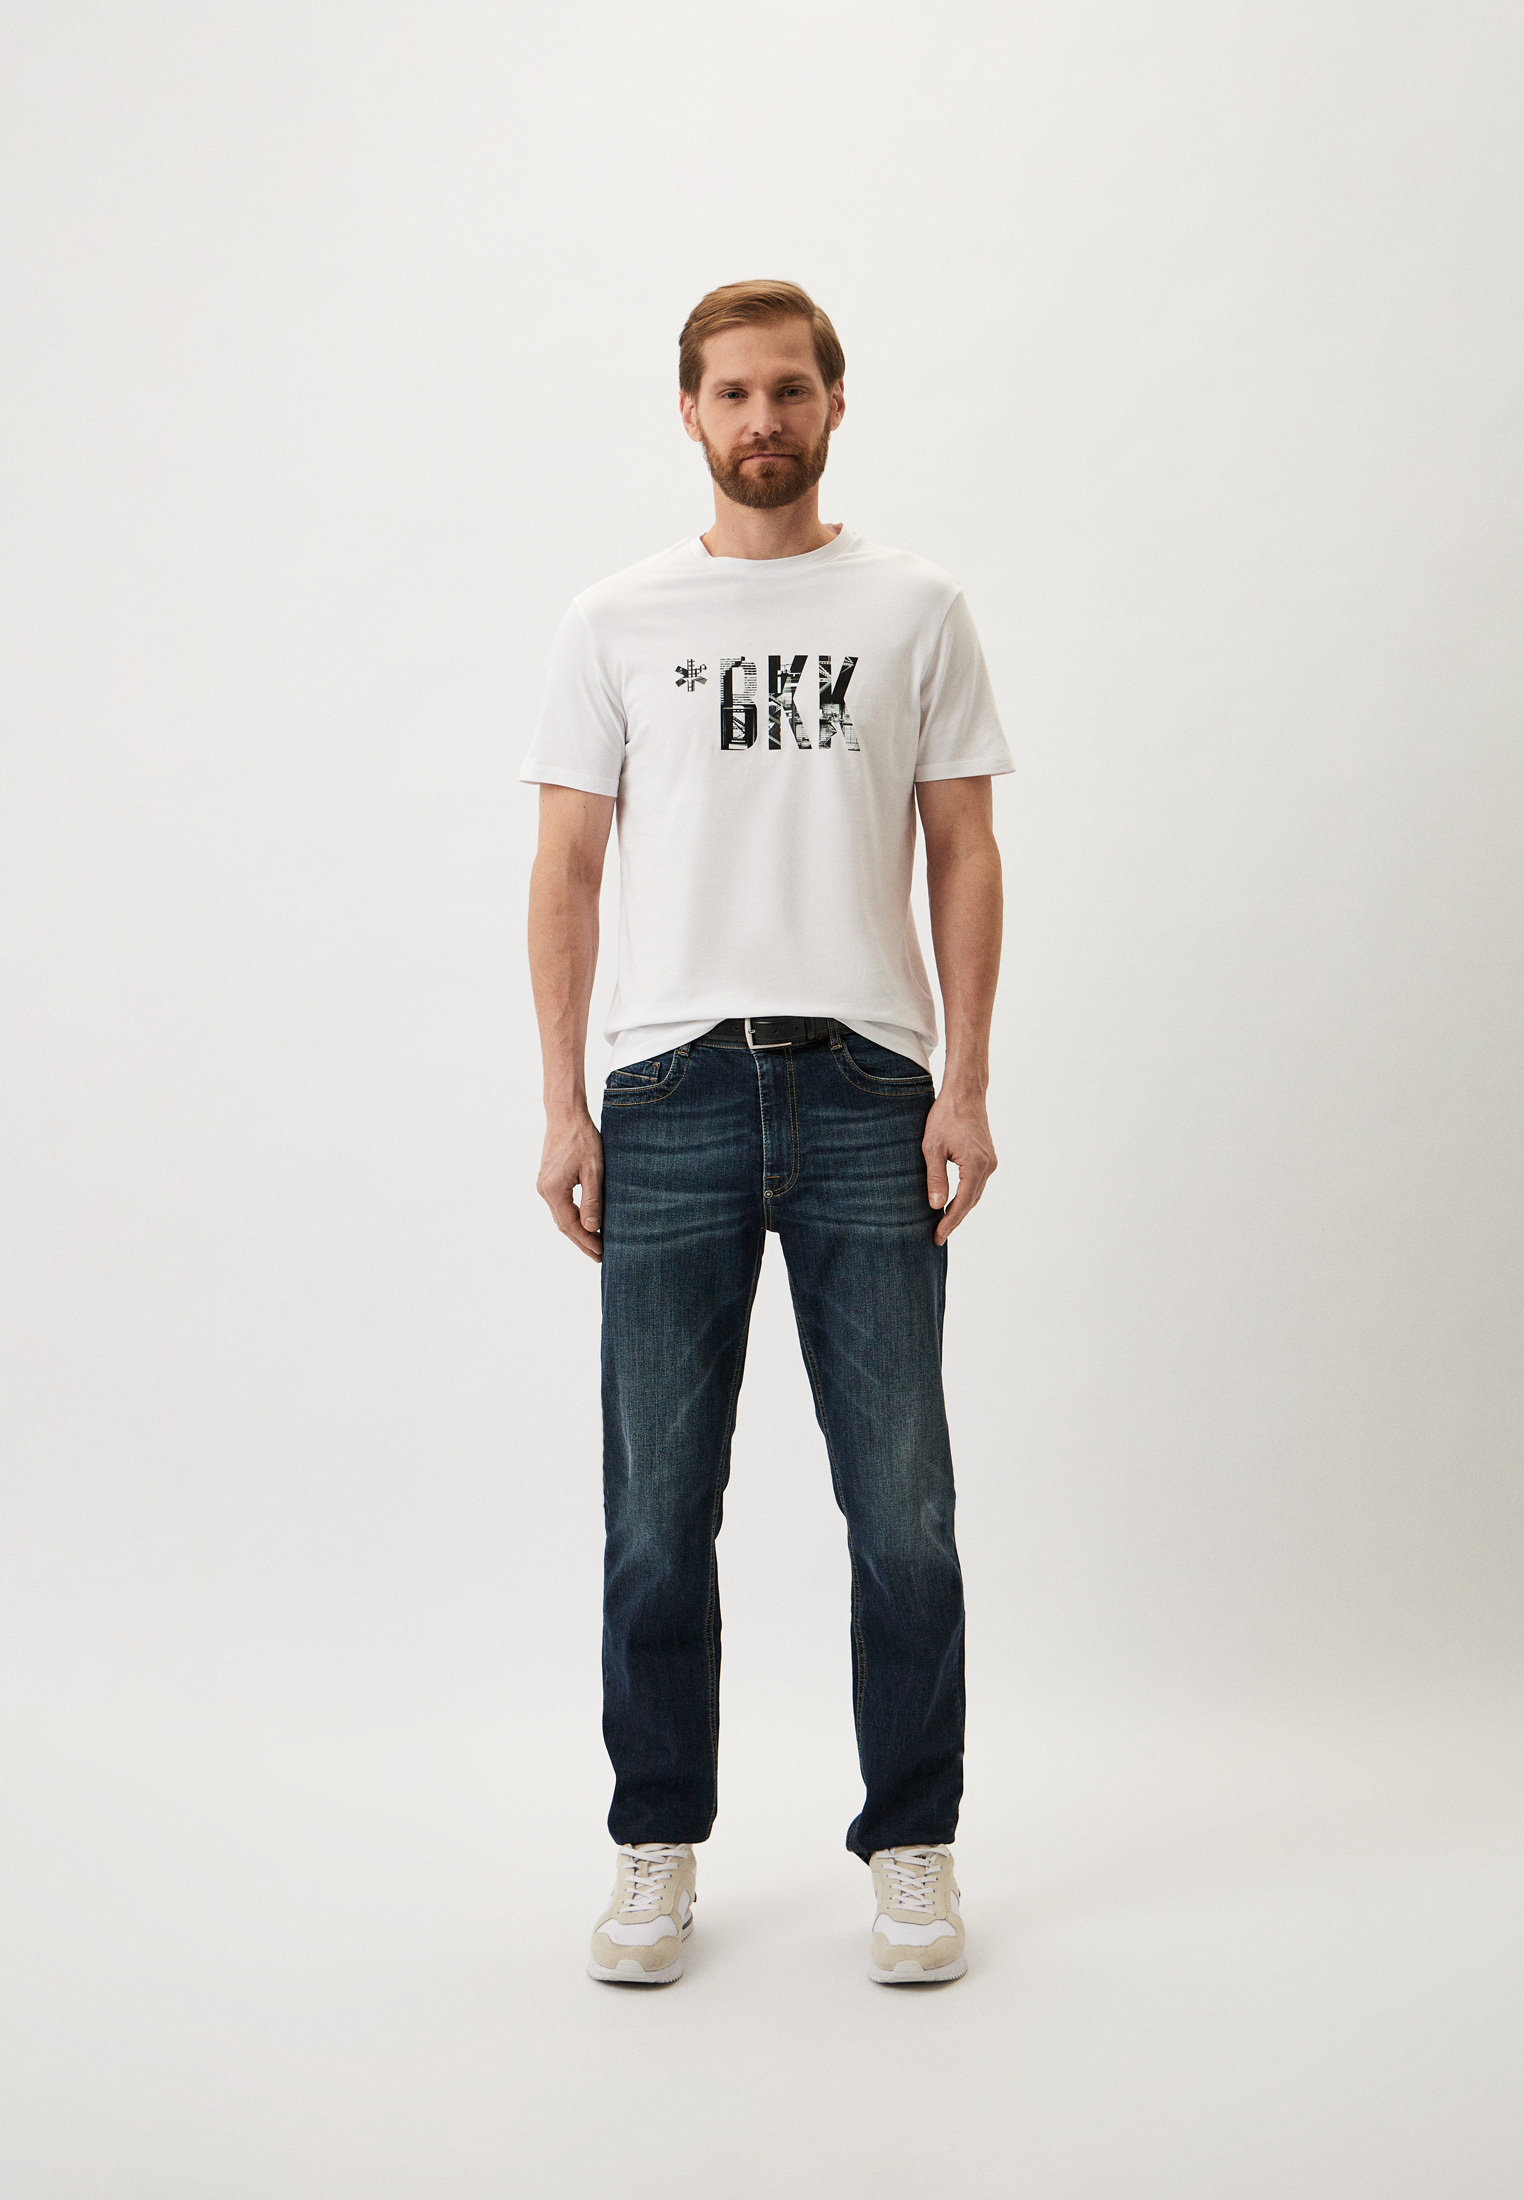 Мужская футболка Bikkembergs (Биккембергс) PBMT0006K0002: изображение 2